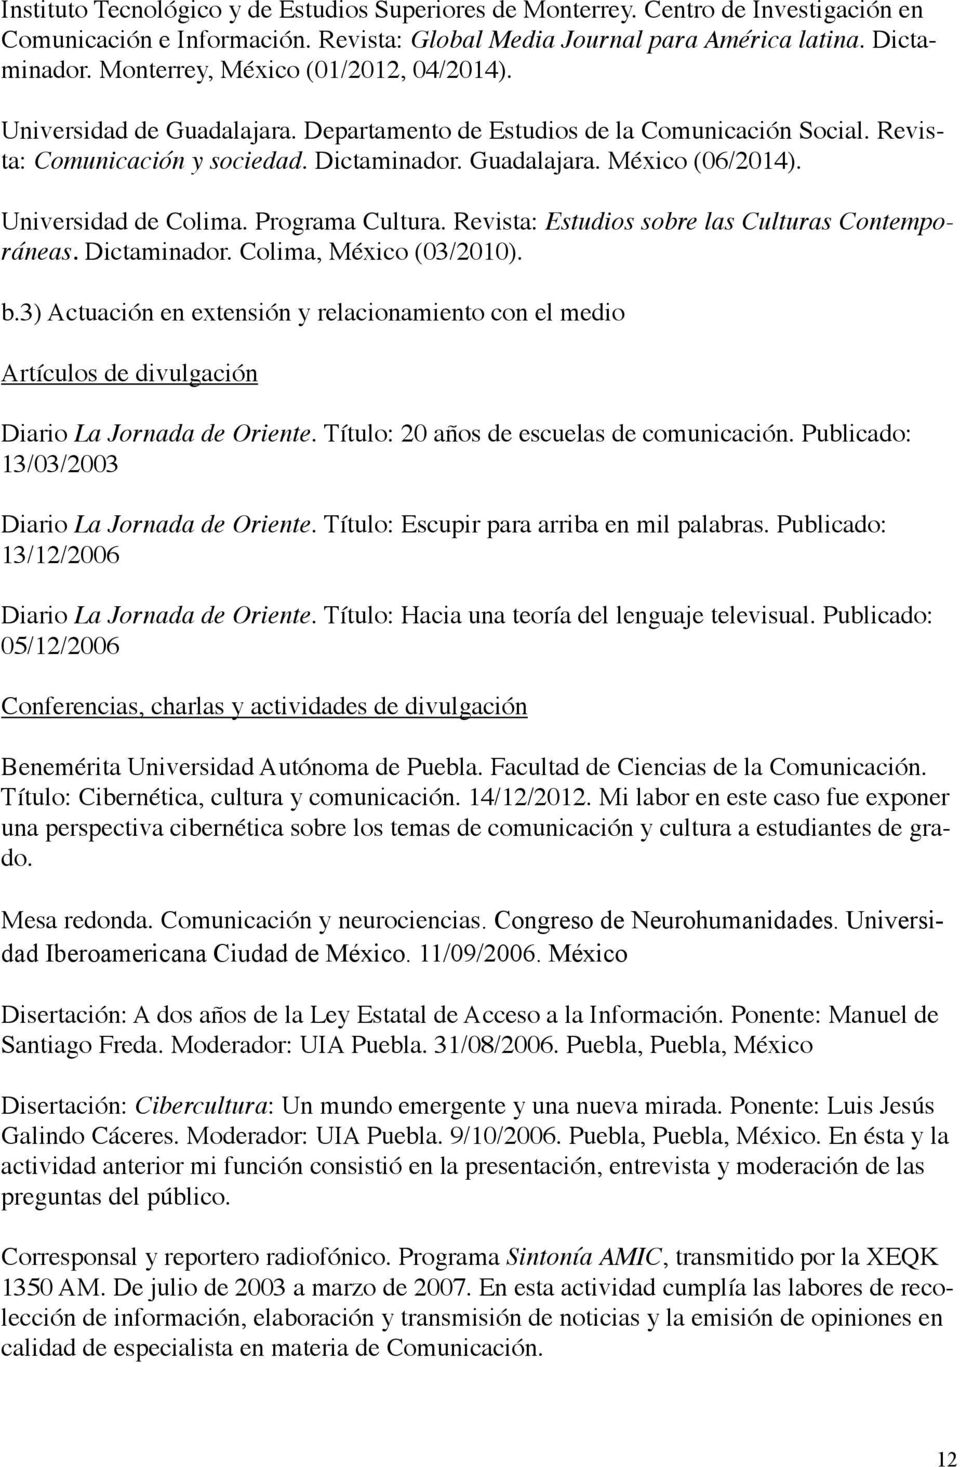 Universidad de Colima. Programa Cultura. Revista: Estudios sobre las Culturas Contemporáneas. Dictaminador. Colima, México (03/2010). Artículos de divulgación b.